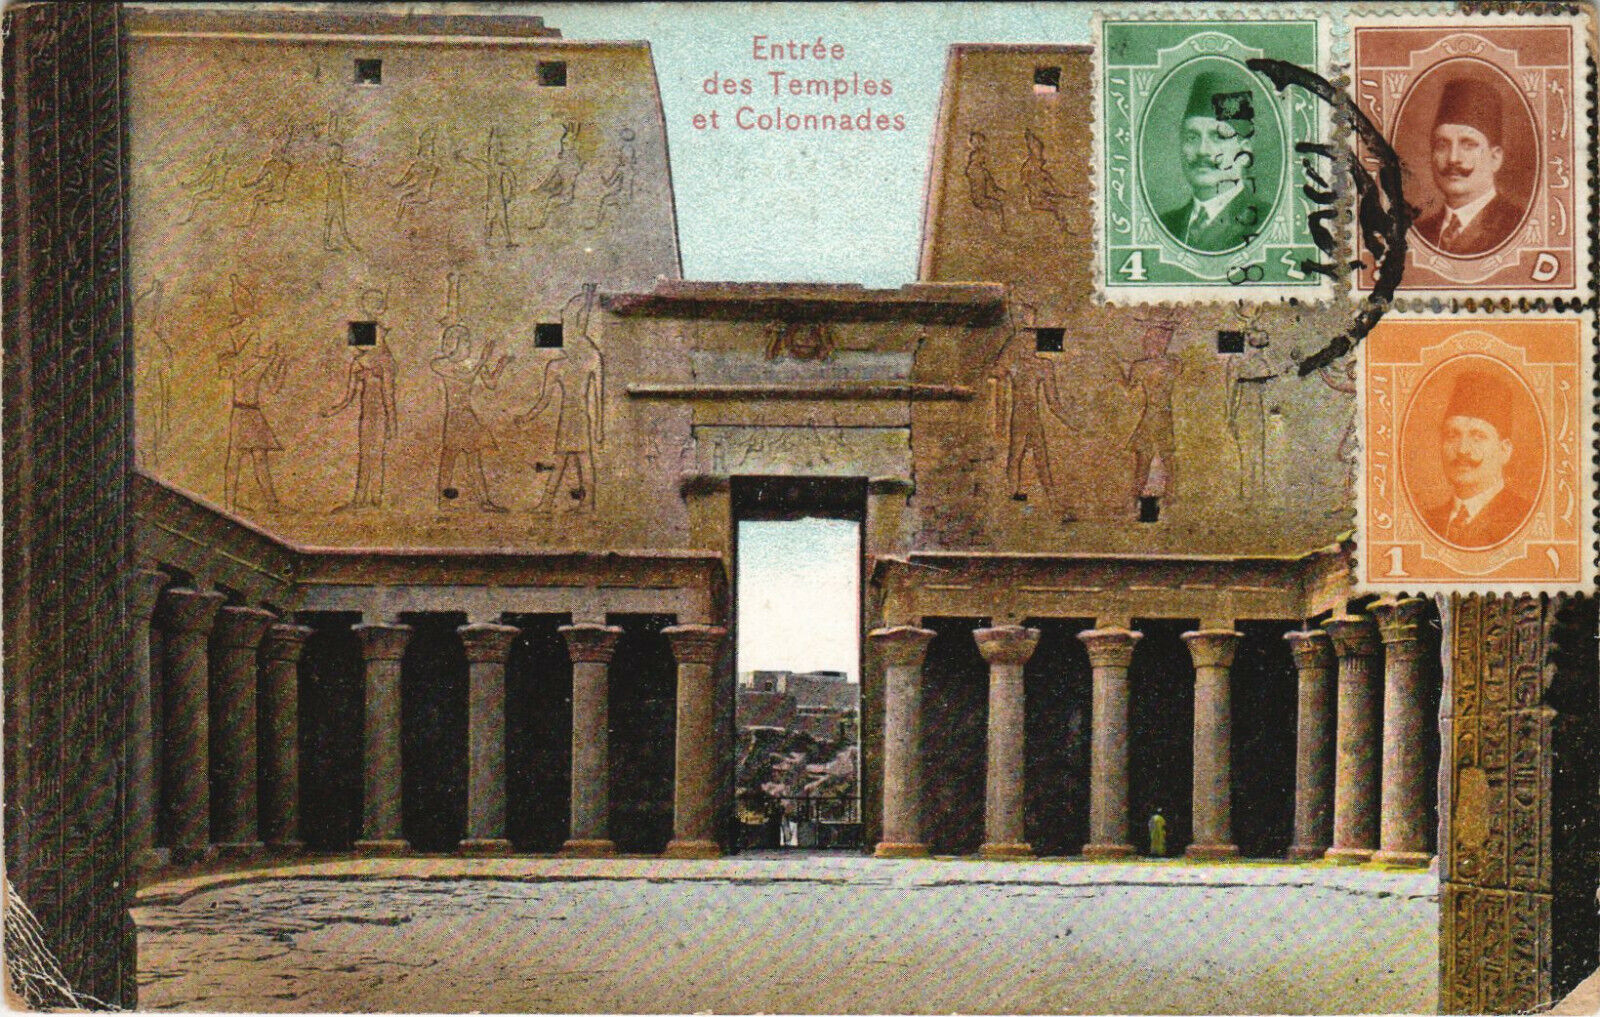 PC EGYPT, ENTRÉE DES TEMPLES ET COLONNADES, Vintage Postcard (b30879)